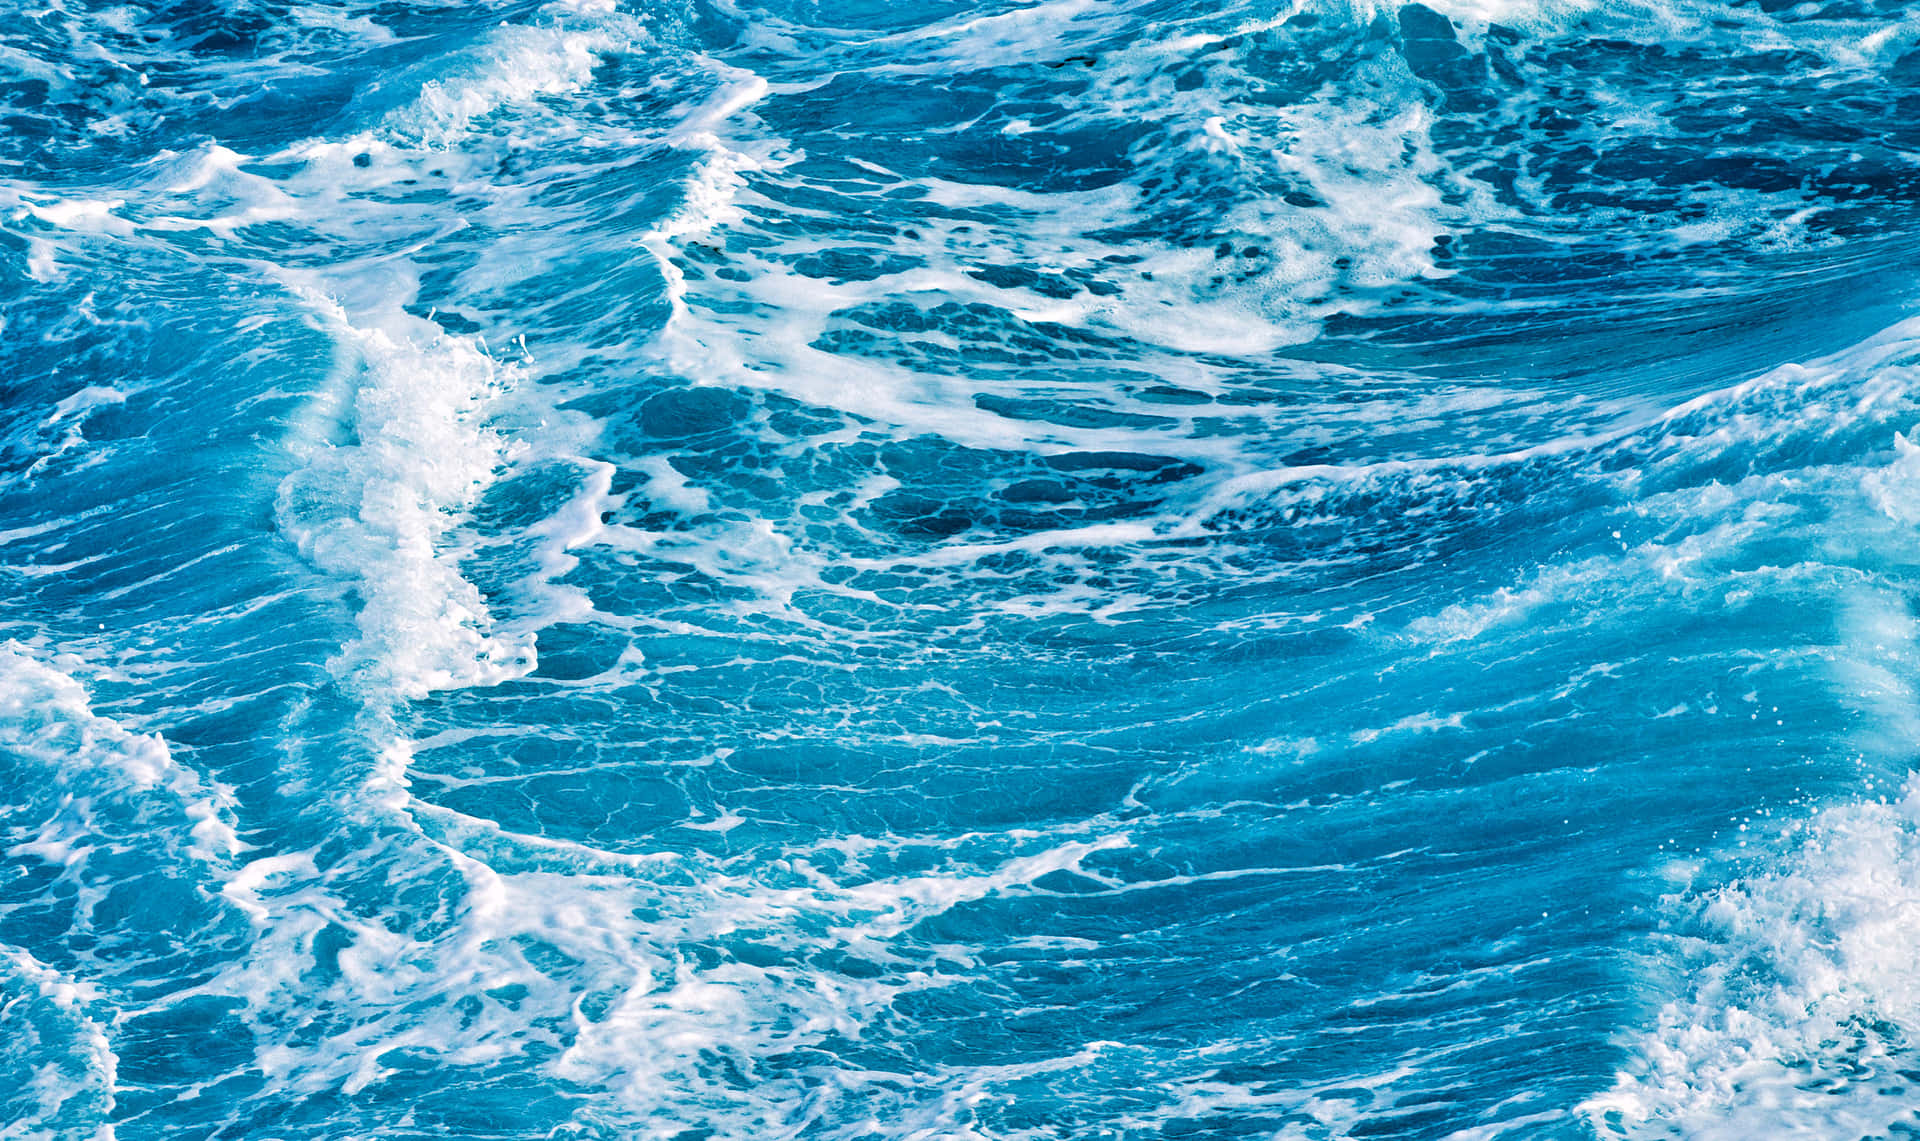 Espandigli Orizzonti Tranquilli Di Un Azzurro Sereno E Abbraccia L'imponenza Dell'oceano.